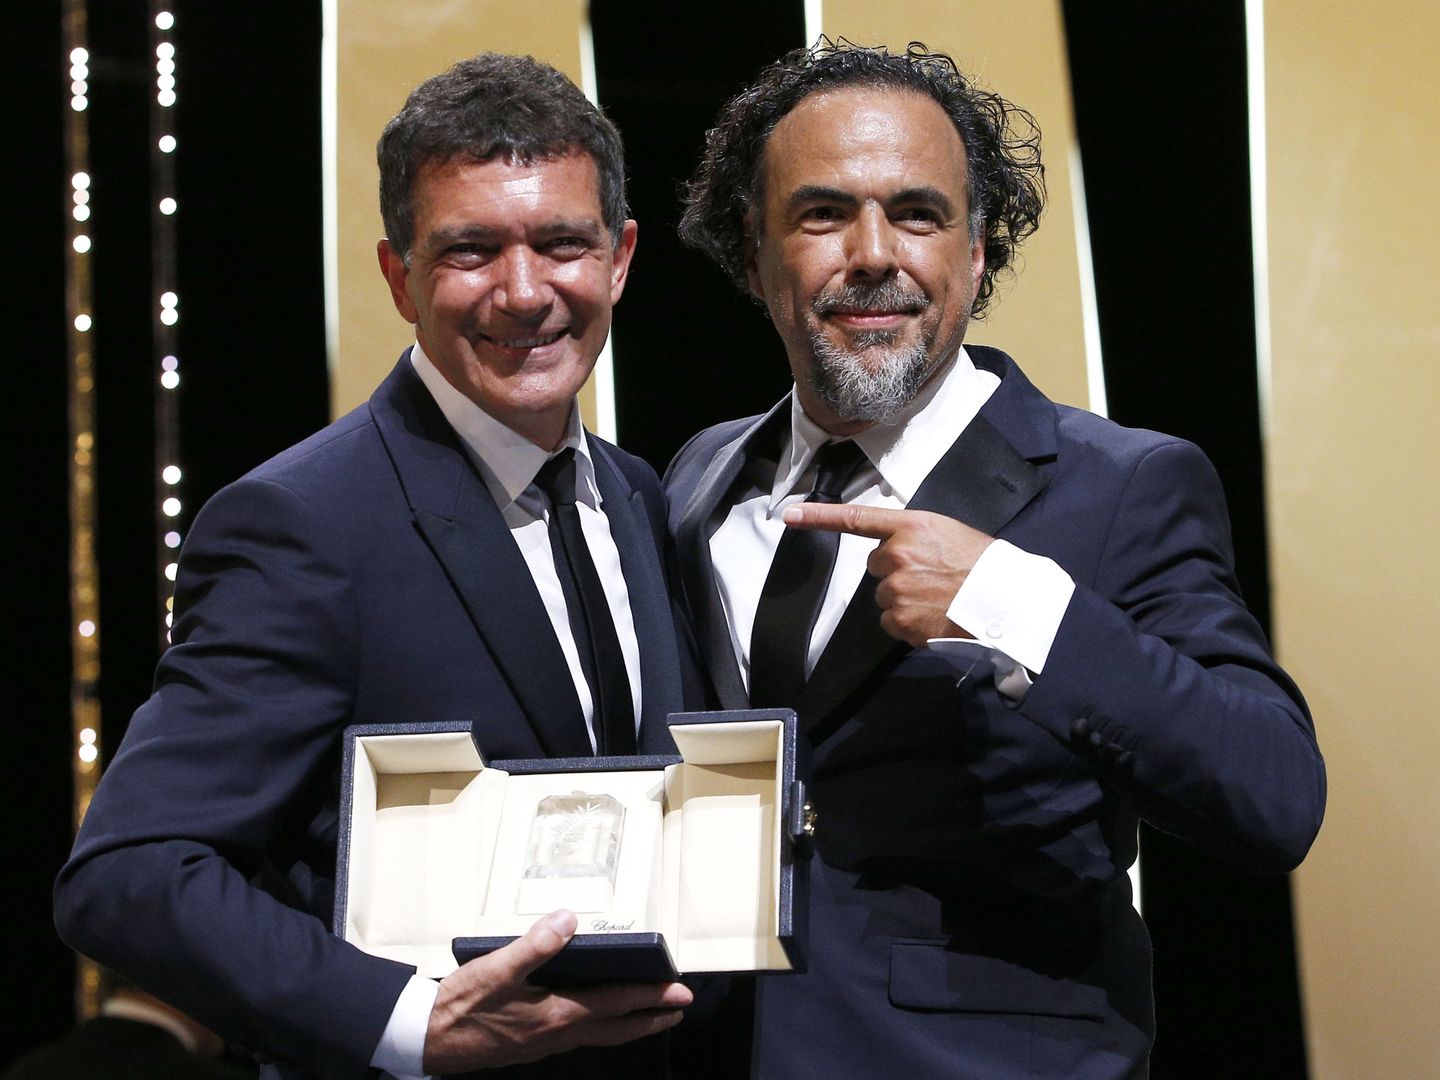 Antonio Banderas, mejor actor en el festival de Cannes 2019 por 'Dolor y gloria'. (Reuters)